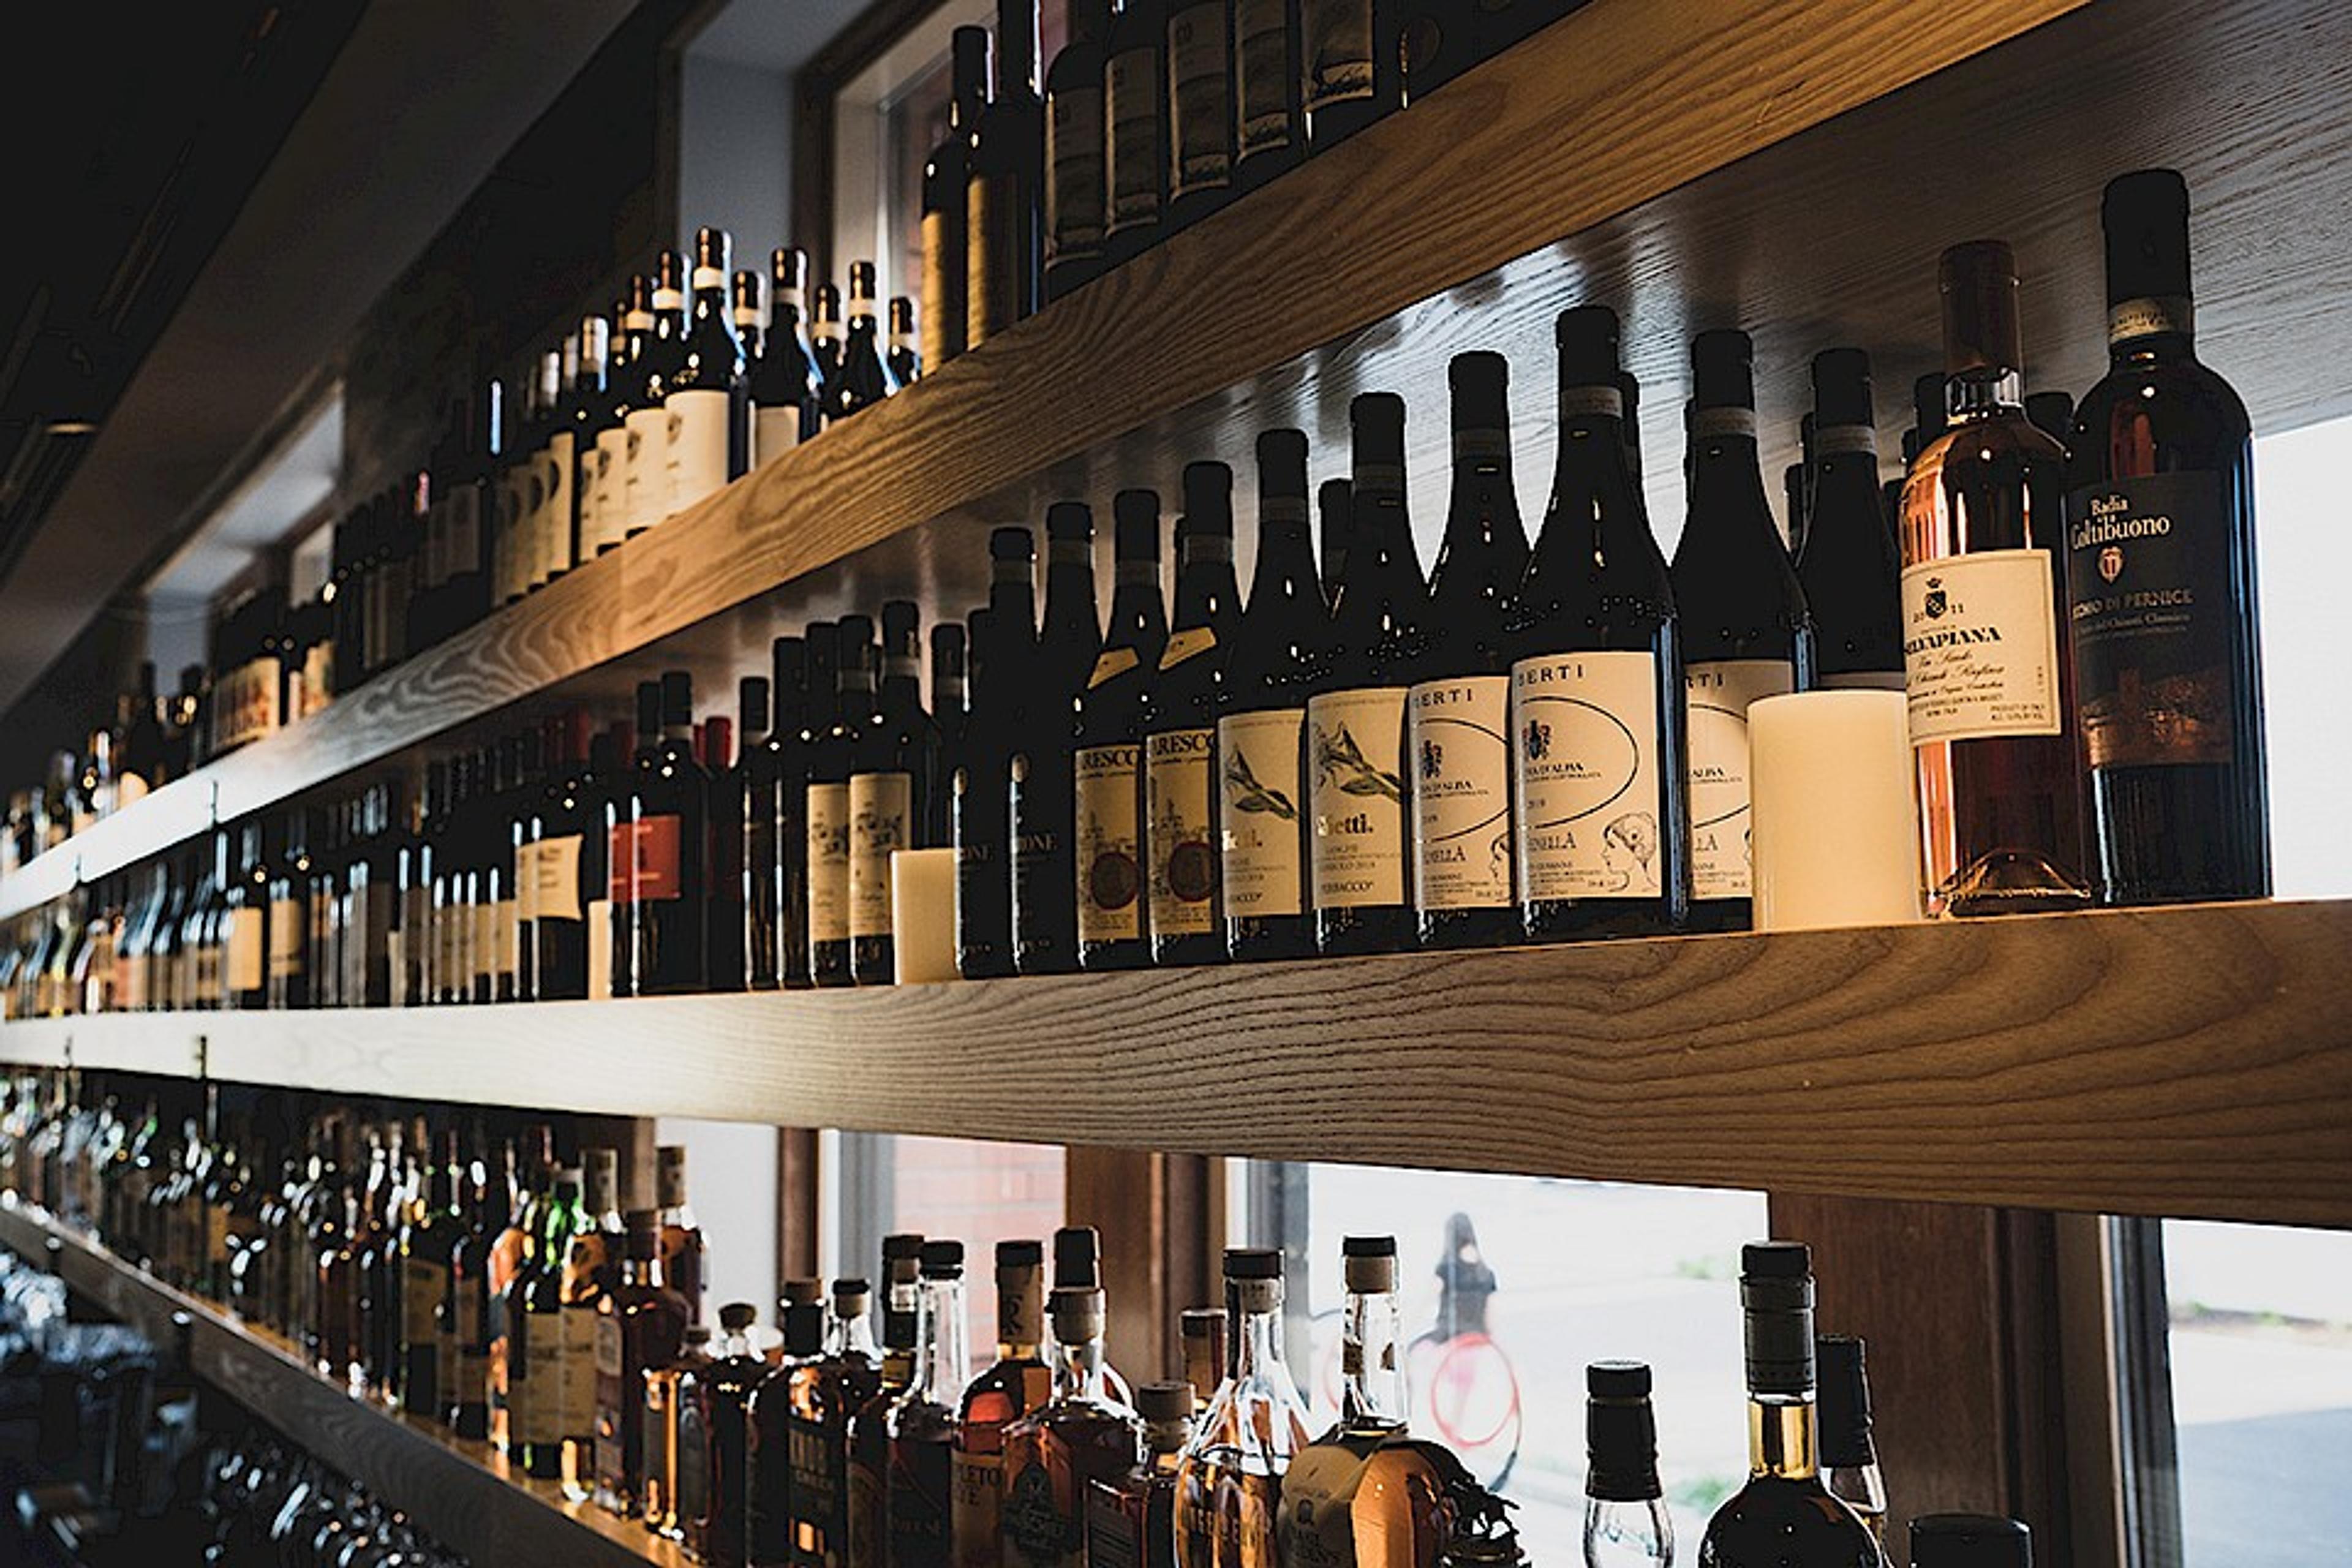 Wine bottles adorning the restaurant's shelves